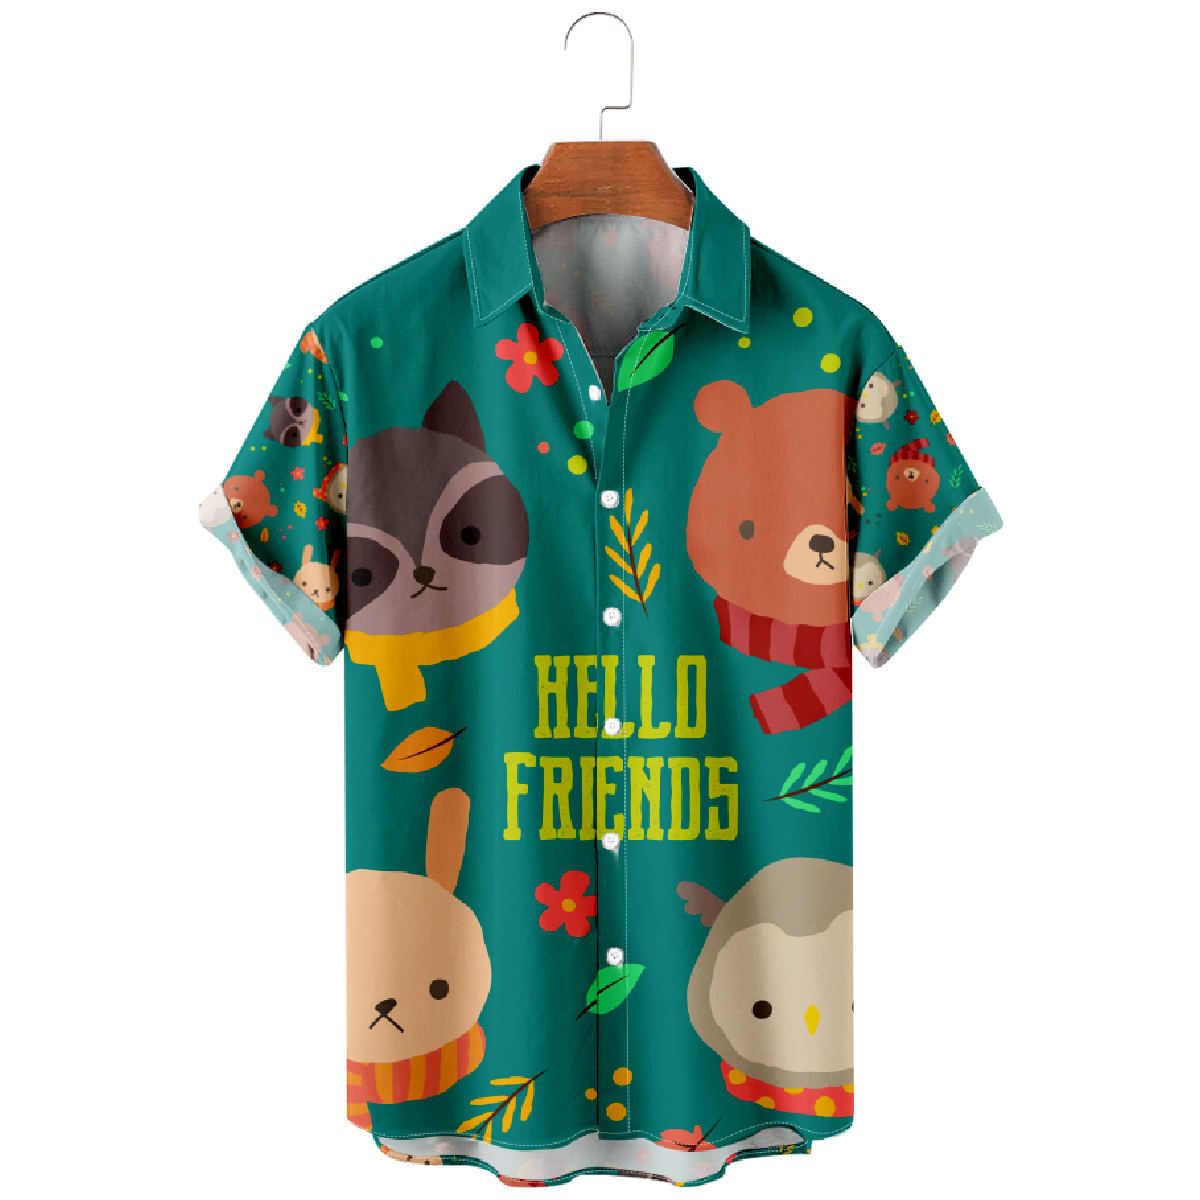 Forest Friends Button Up Shirt Men's Cute Animals Print Shirt Short Sleeve Regular Fit